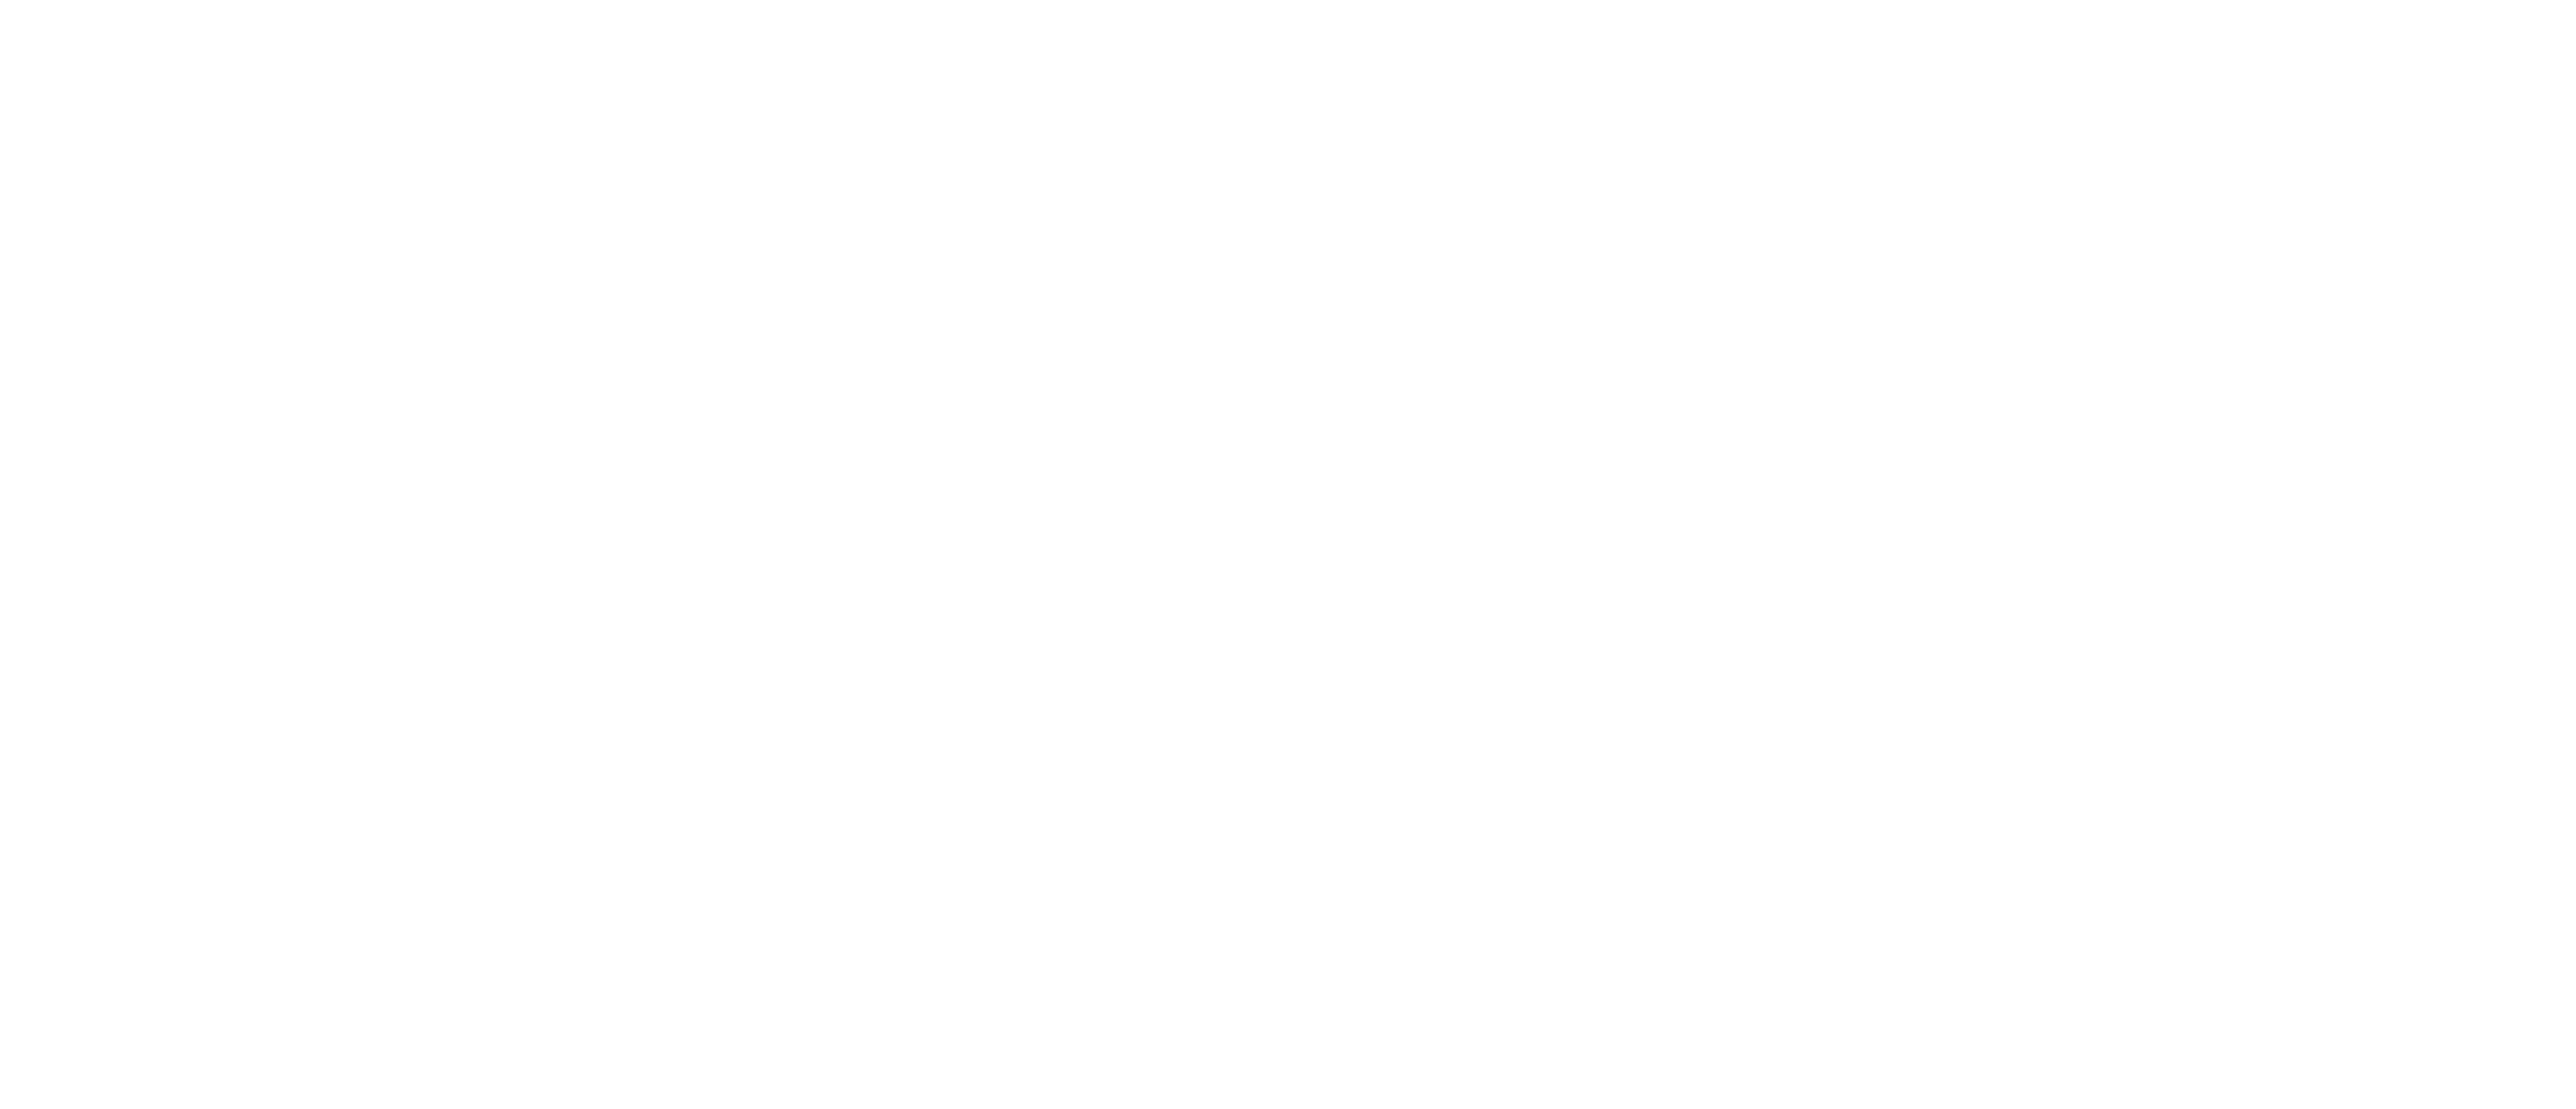 A2A - Life Company